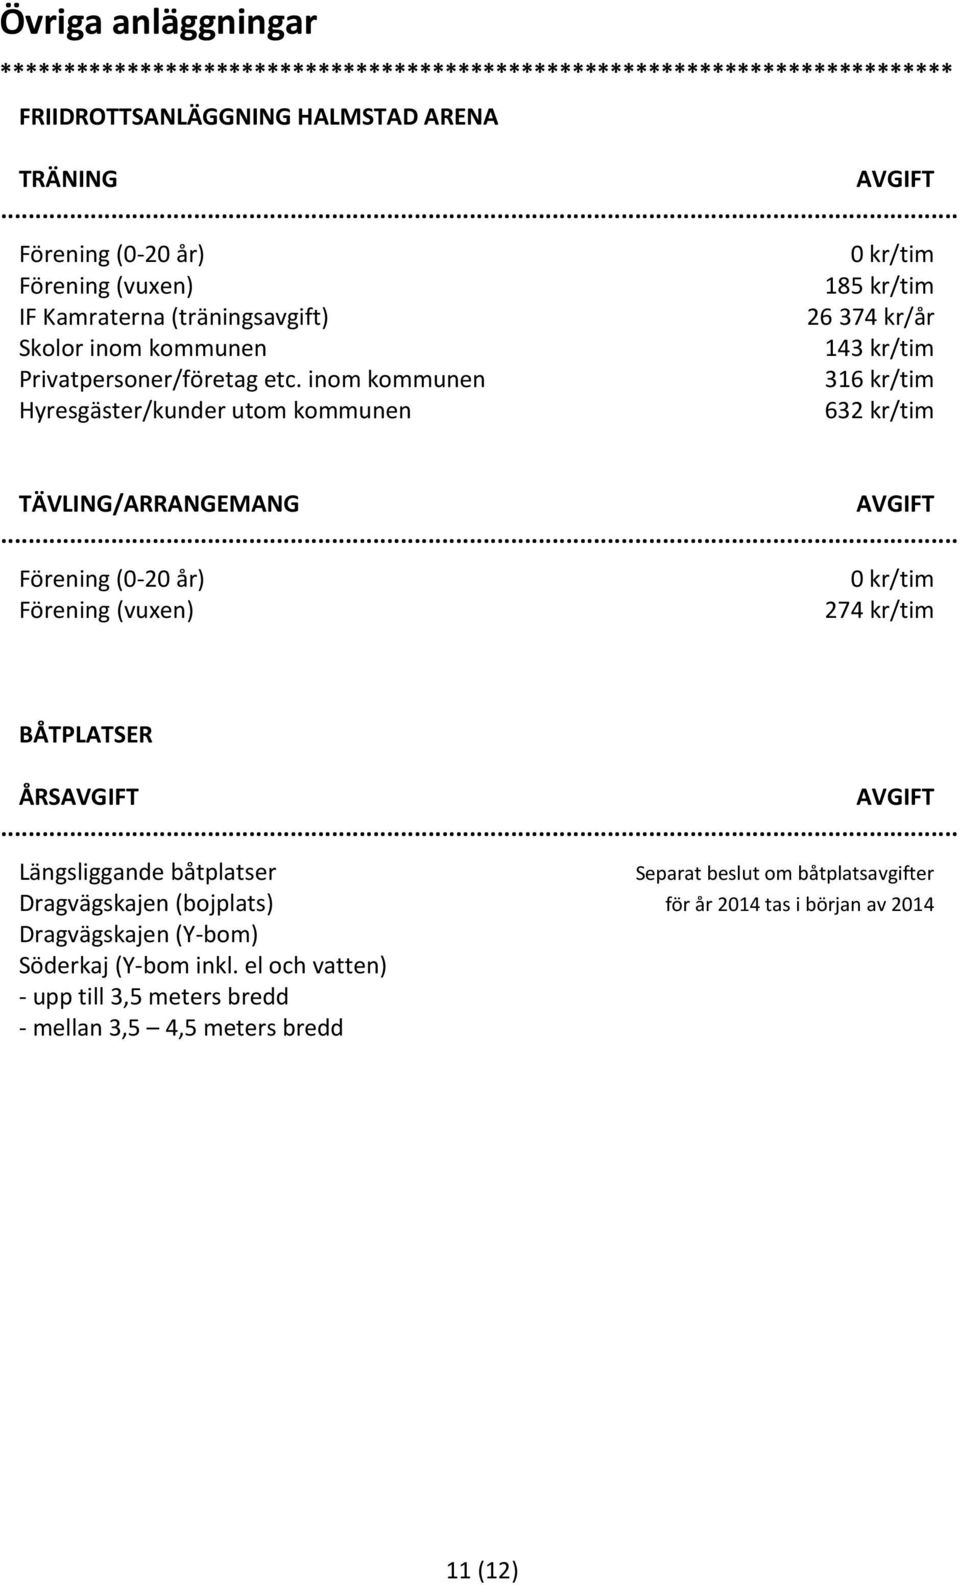 Separat beslut om båtplatsavgifter Dragvägskajen (bojplats) för år 2014 tas i början av 2014 Dragvägskajen